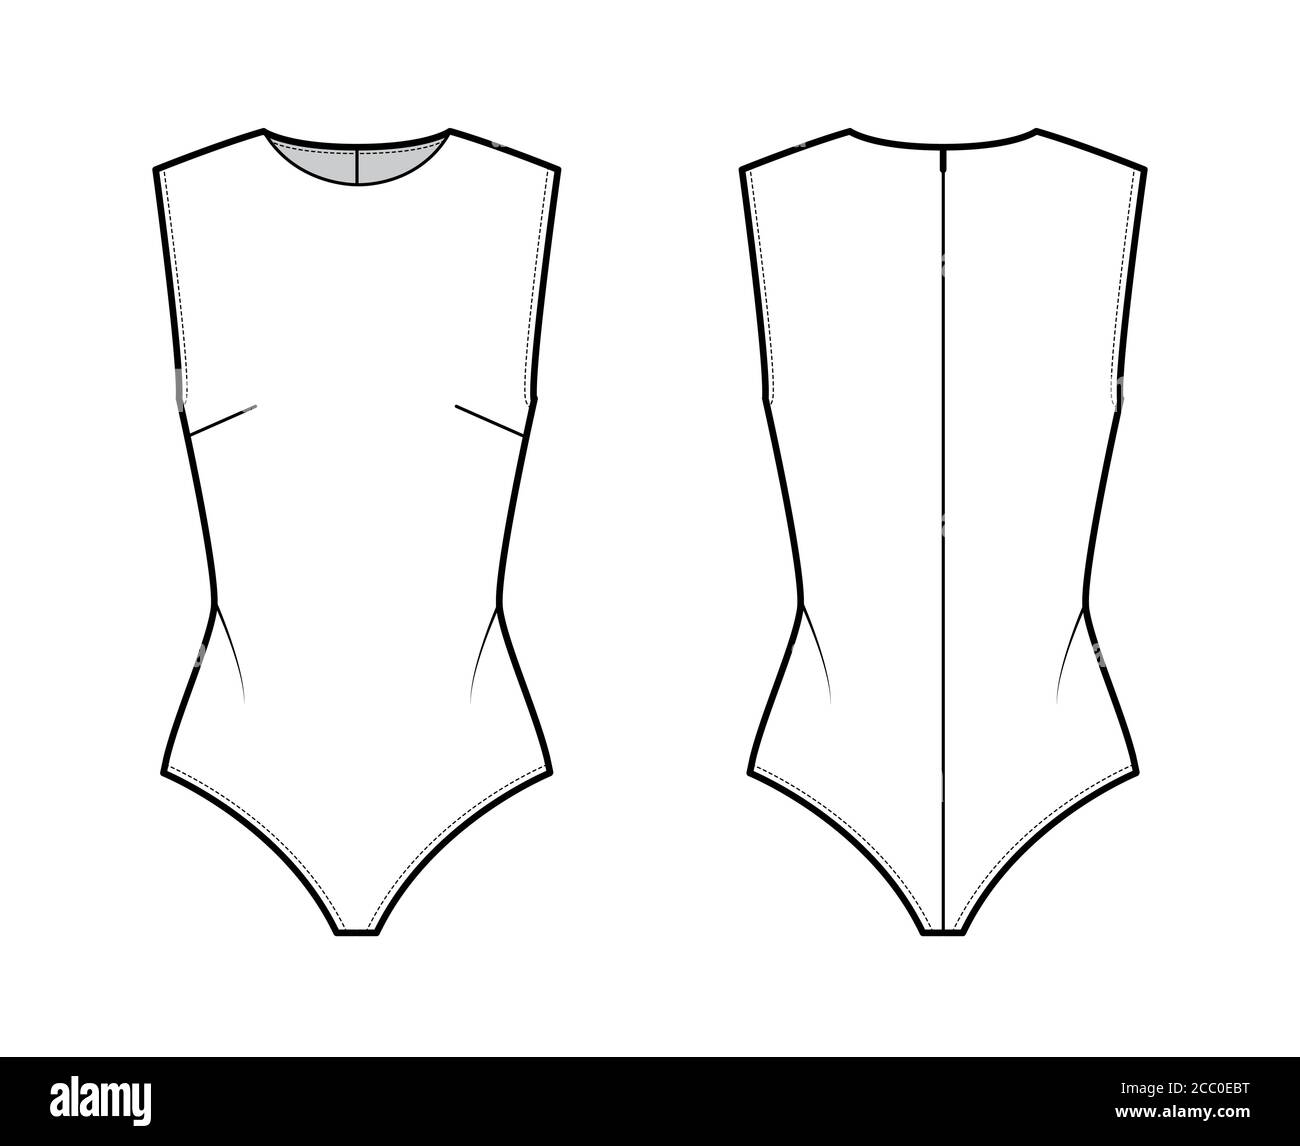 Sleeveless bodysuit technical fashion illustration with round neck ...